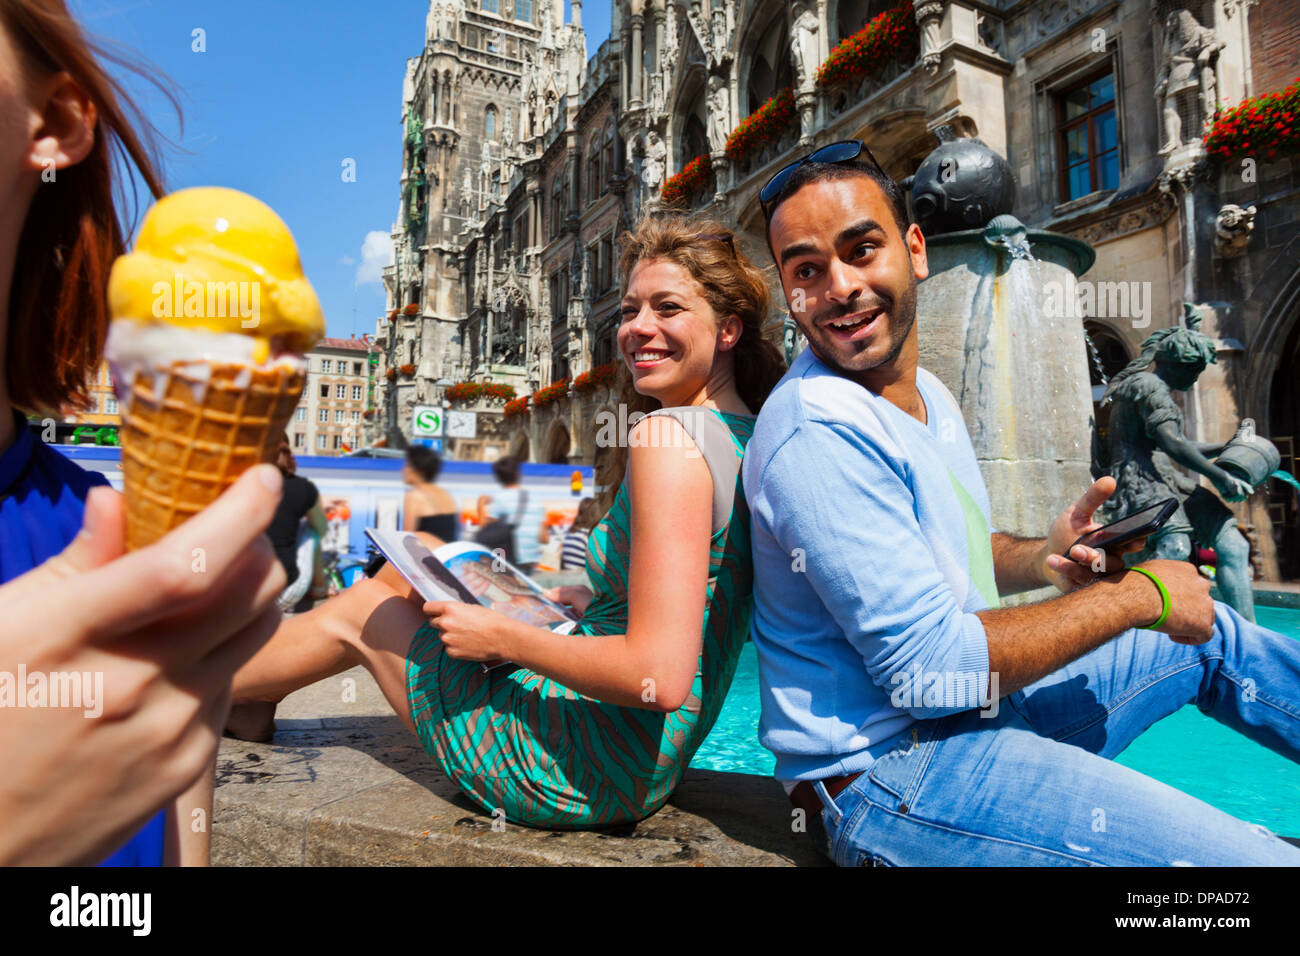 Couple and woman with ice cream, Munich Marienplatz, Munich, Germany Stock Photo